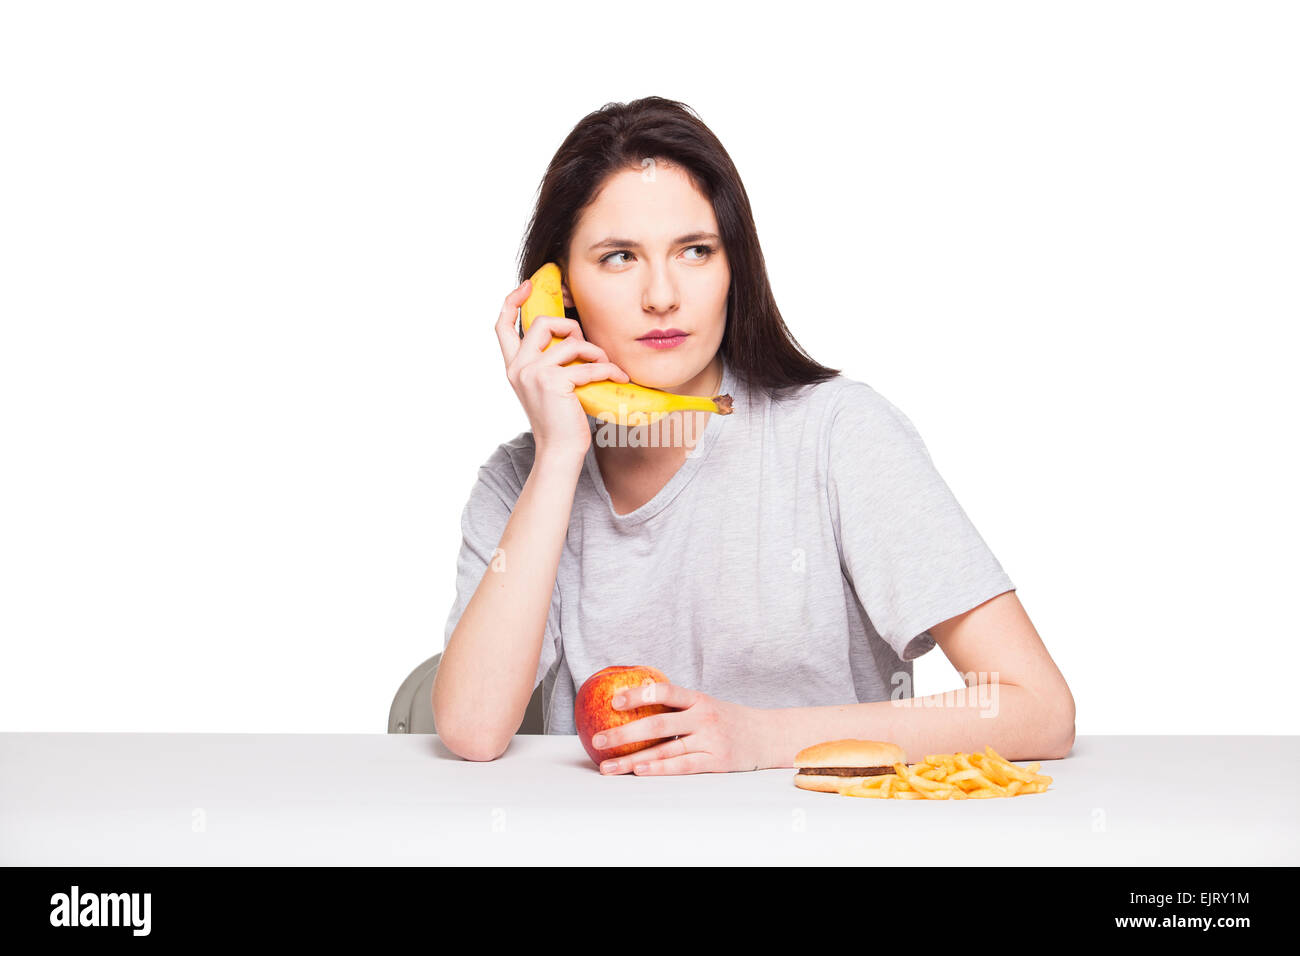 Naturale donna espressiva giocando con frutti, avendo di fronte junk e cibo sano, isolato su bianco Foto Stock